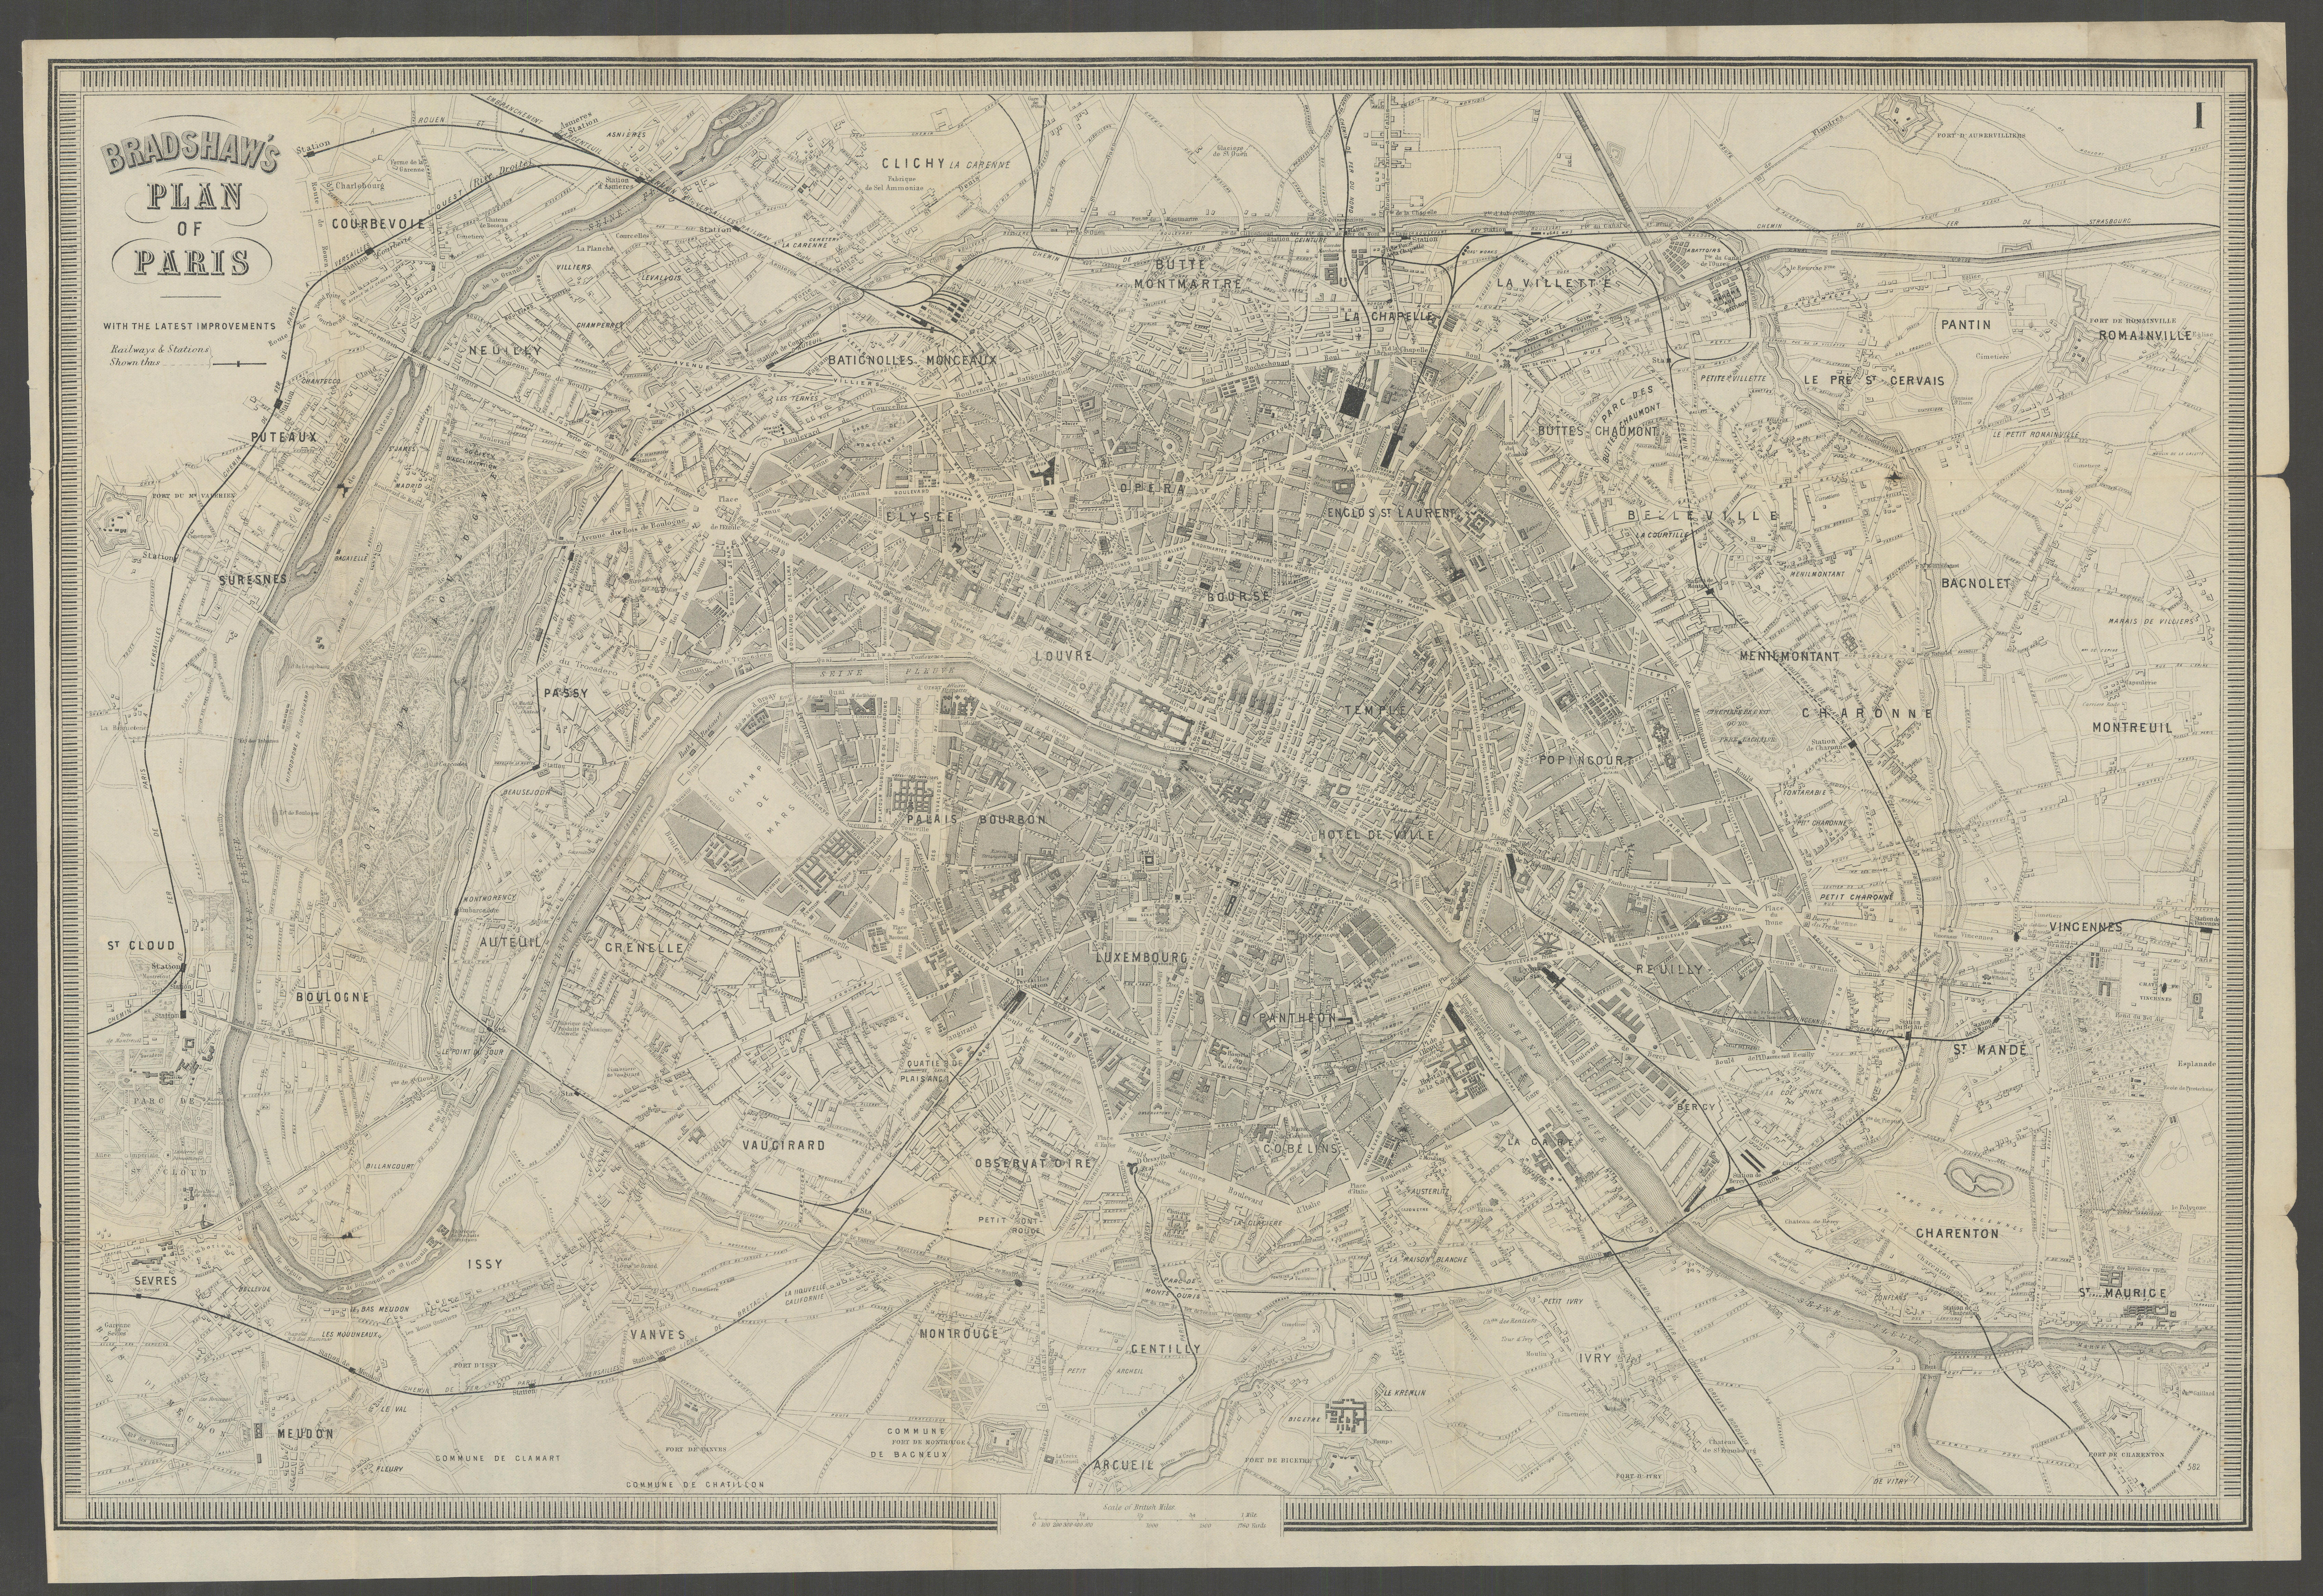 Associate Product PARIS. Paris. Town city plan 1882 old antique vintage map chart